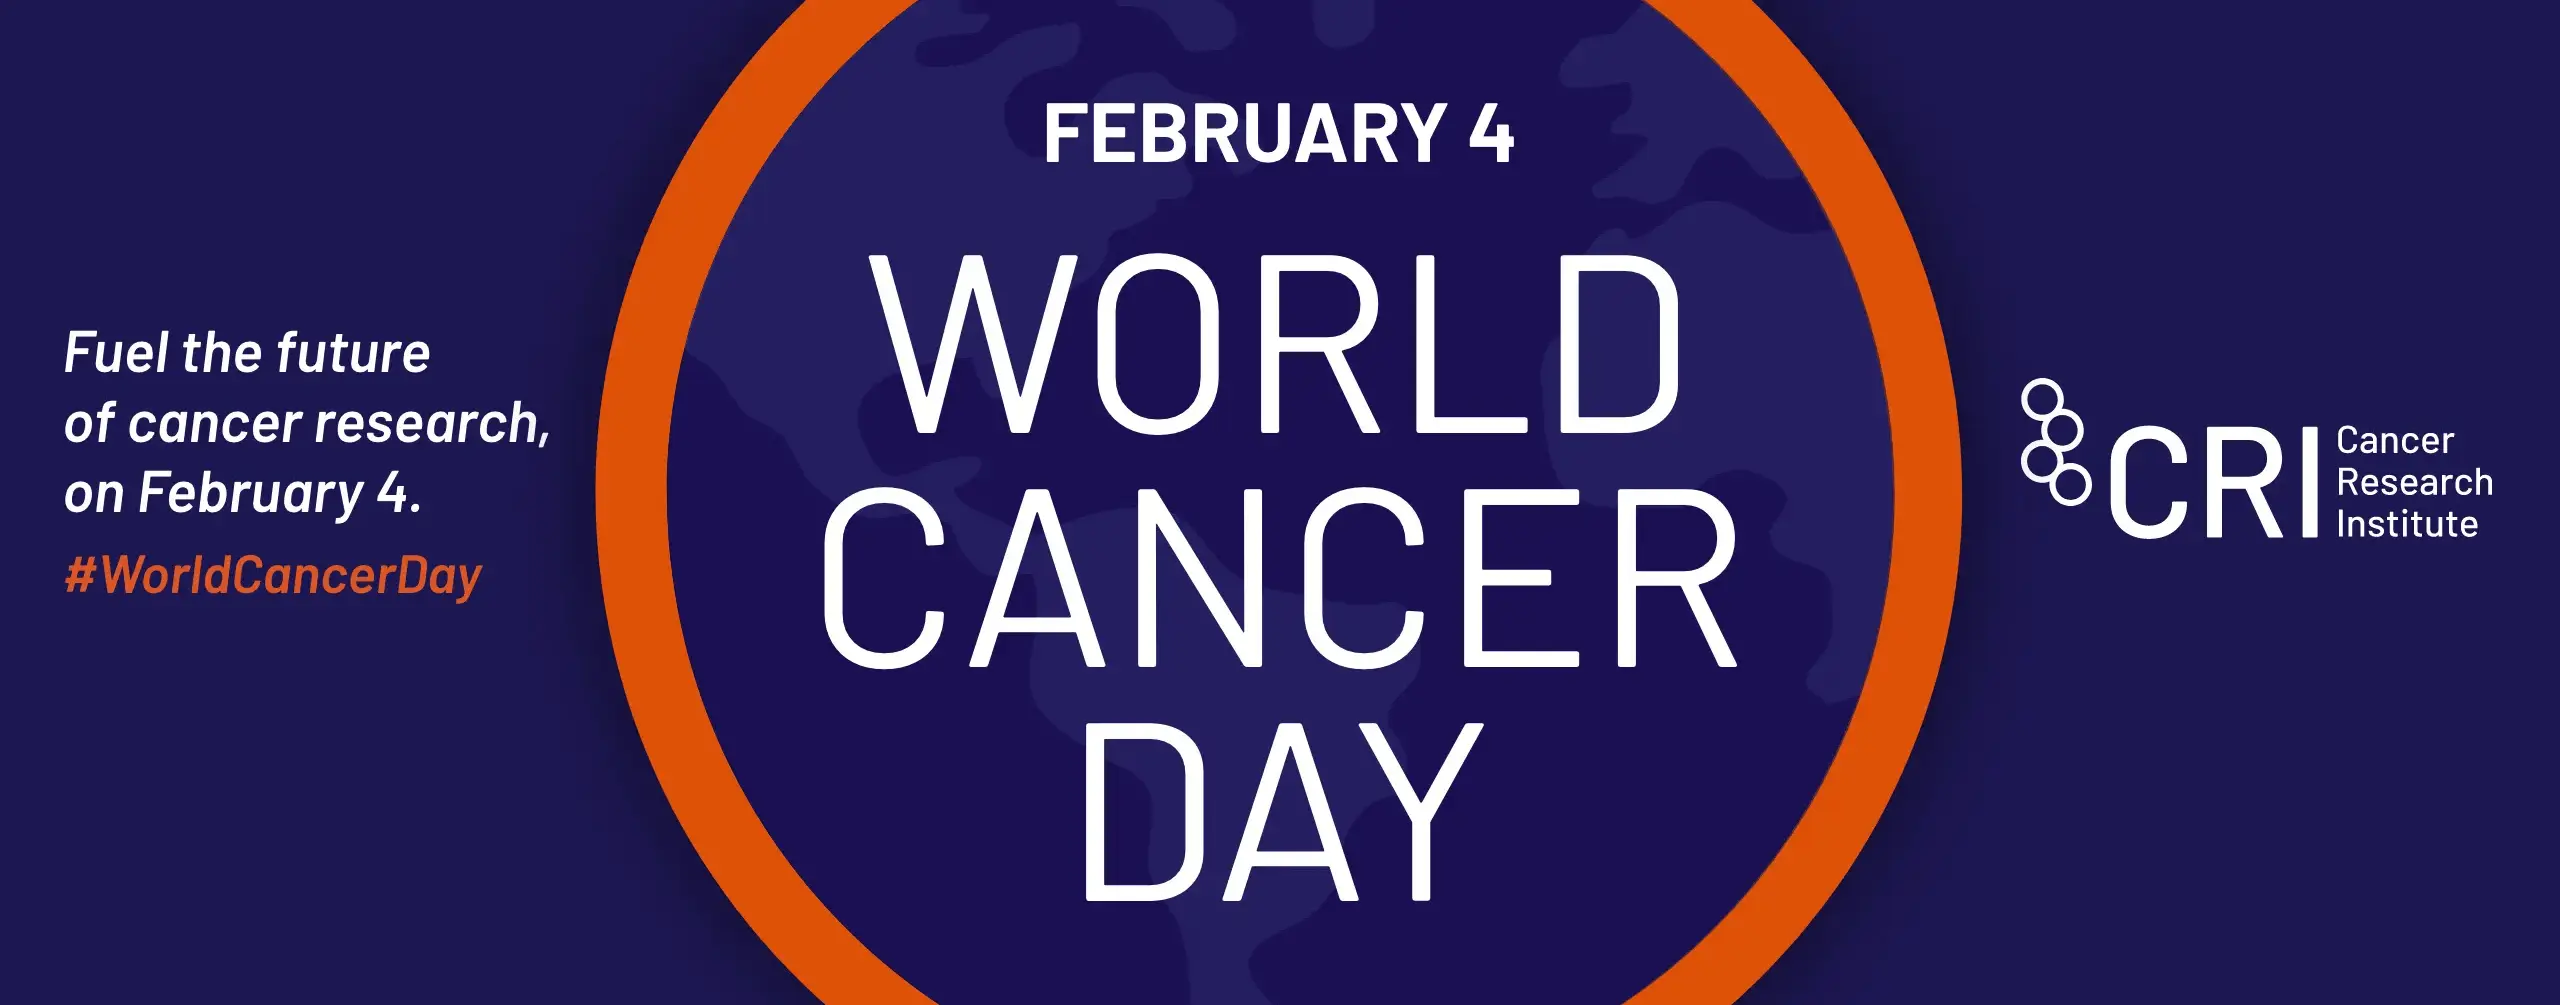 Feb 4 - World Cancer Day